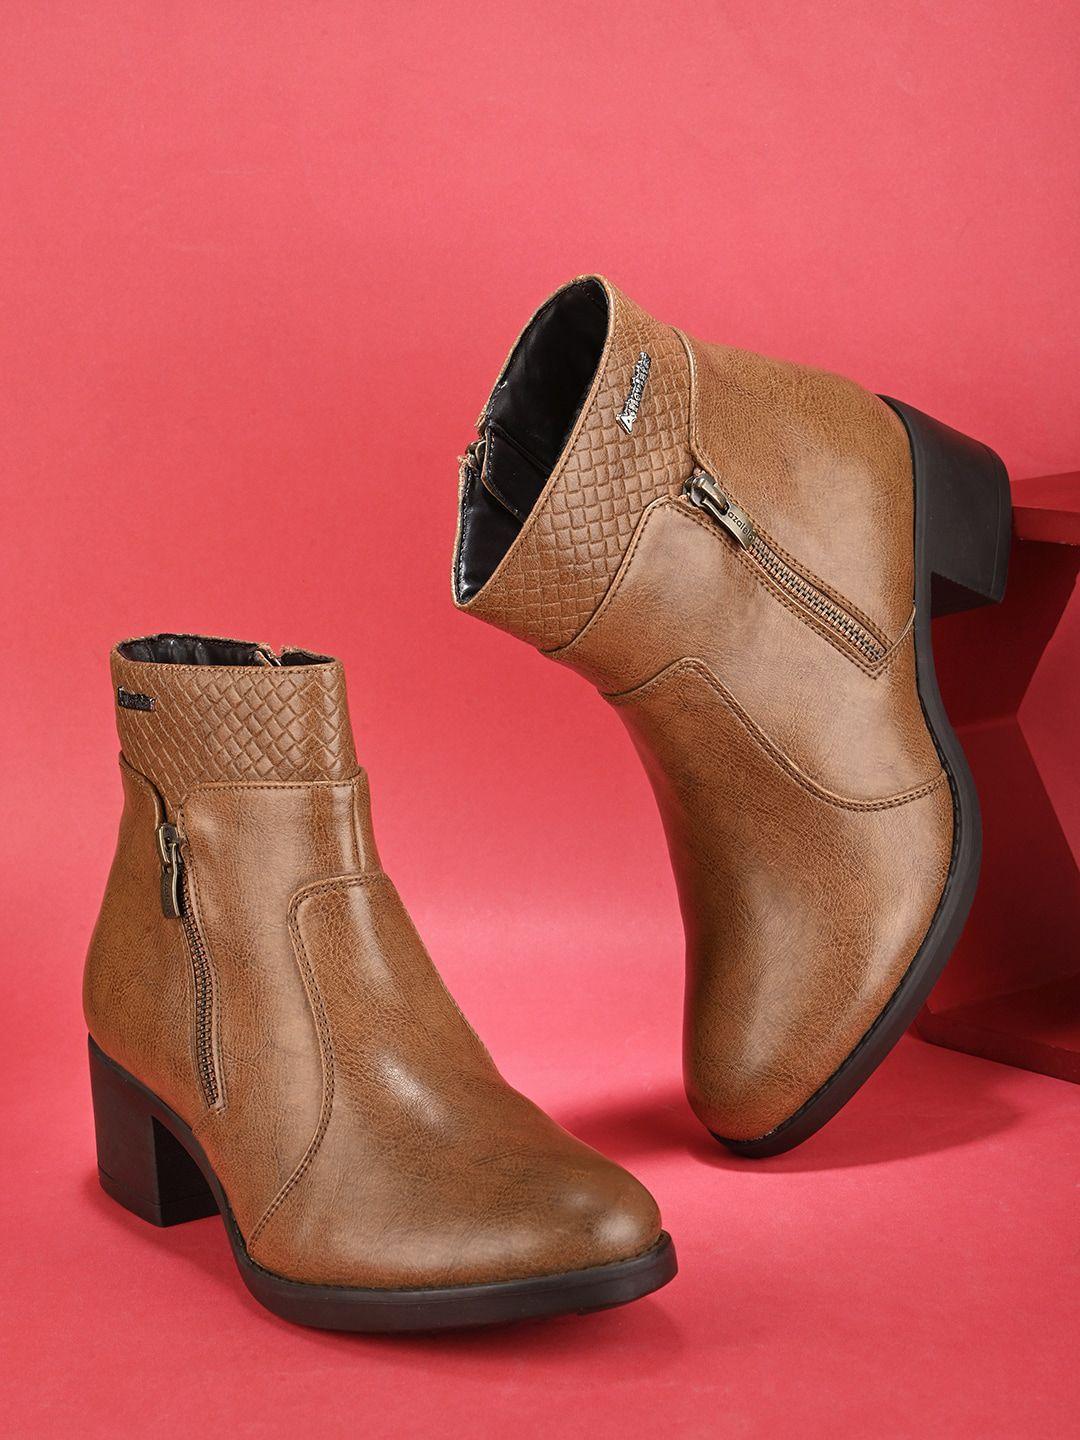 alleviater women block heeled mid calf length regular boots